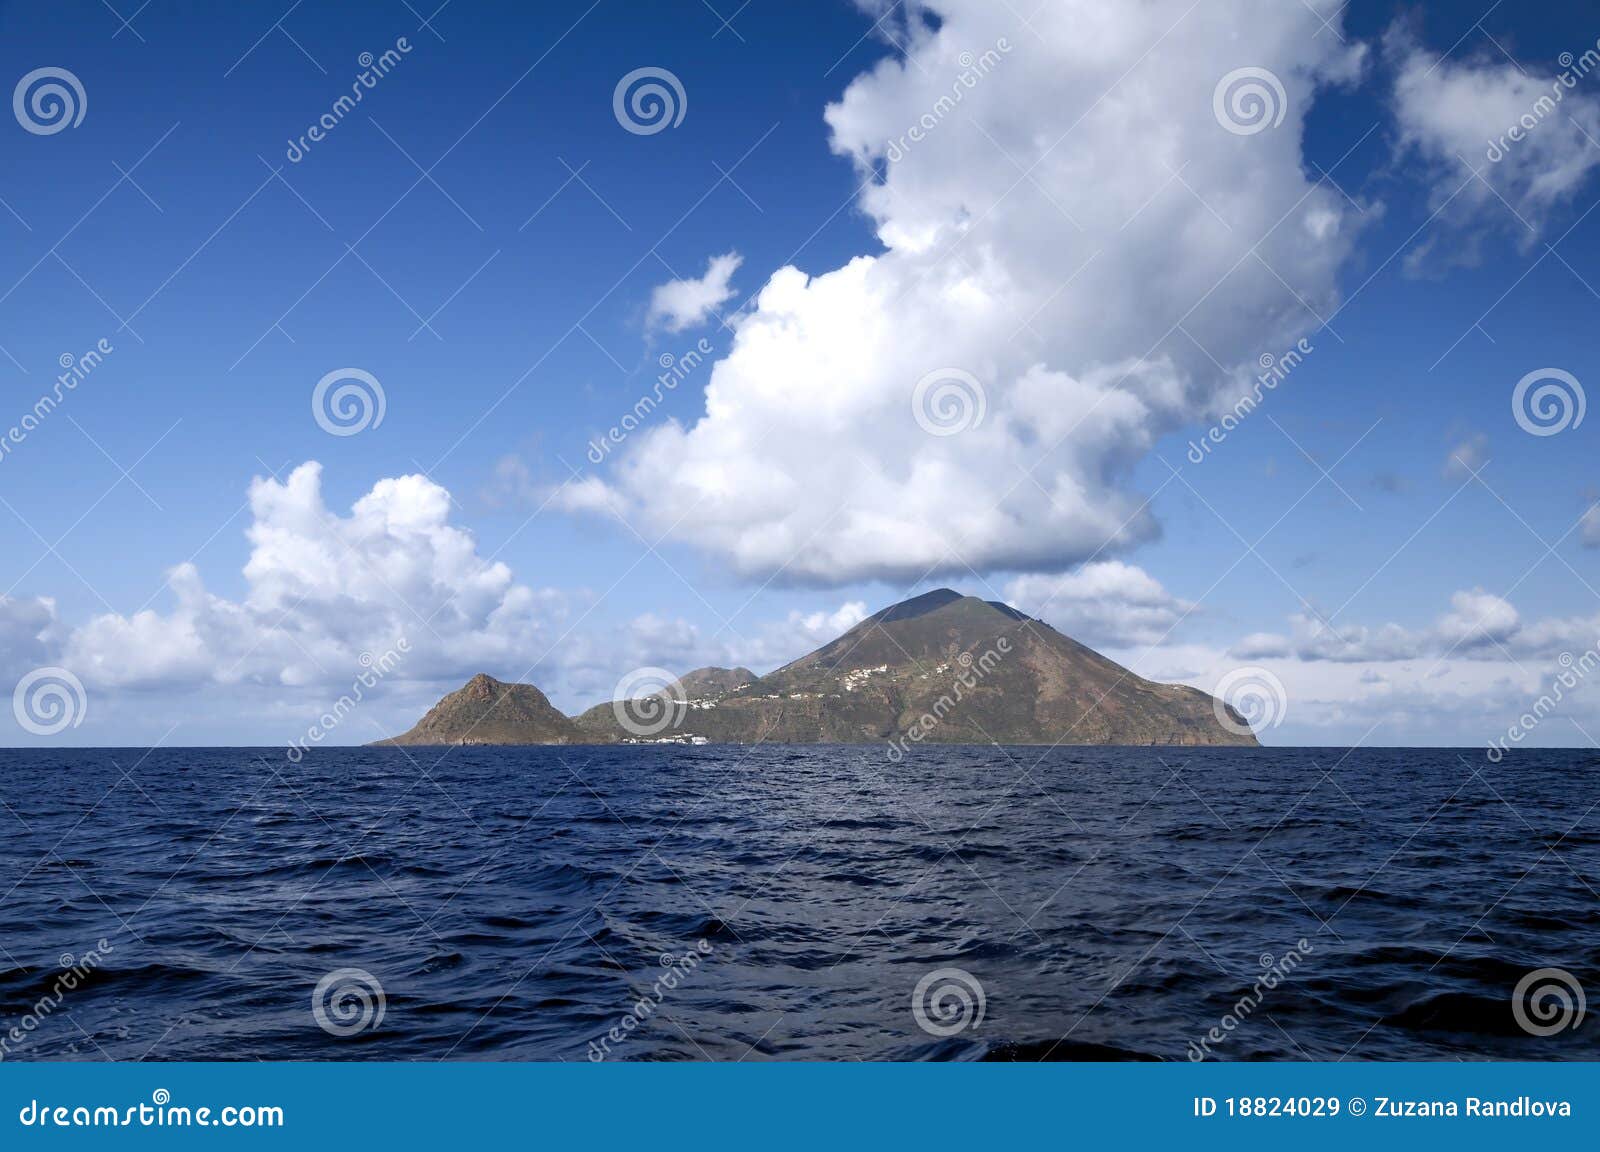 filicudi, one of aeolian islands